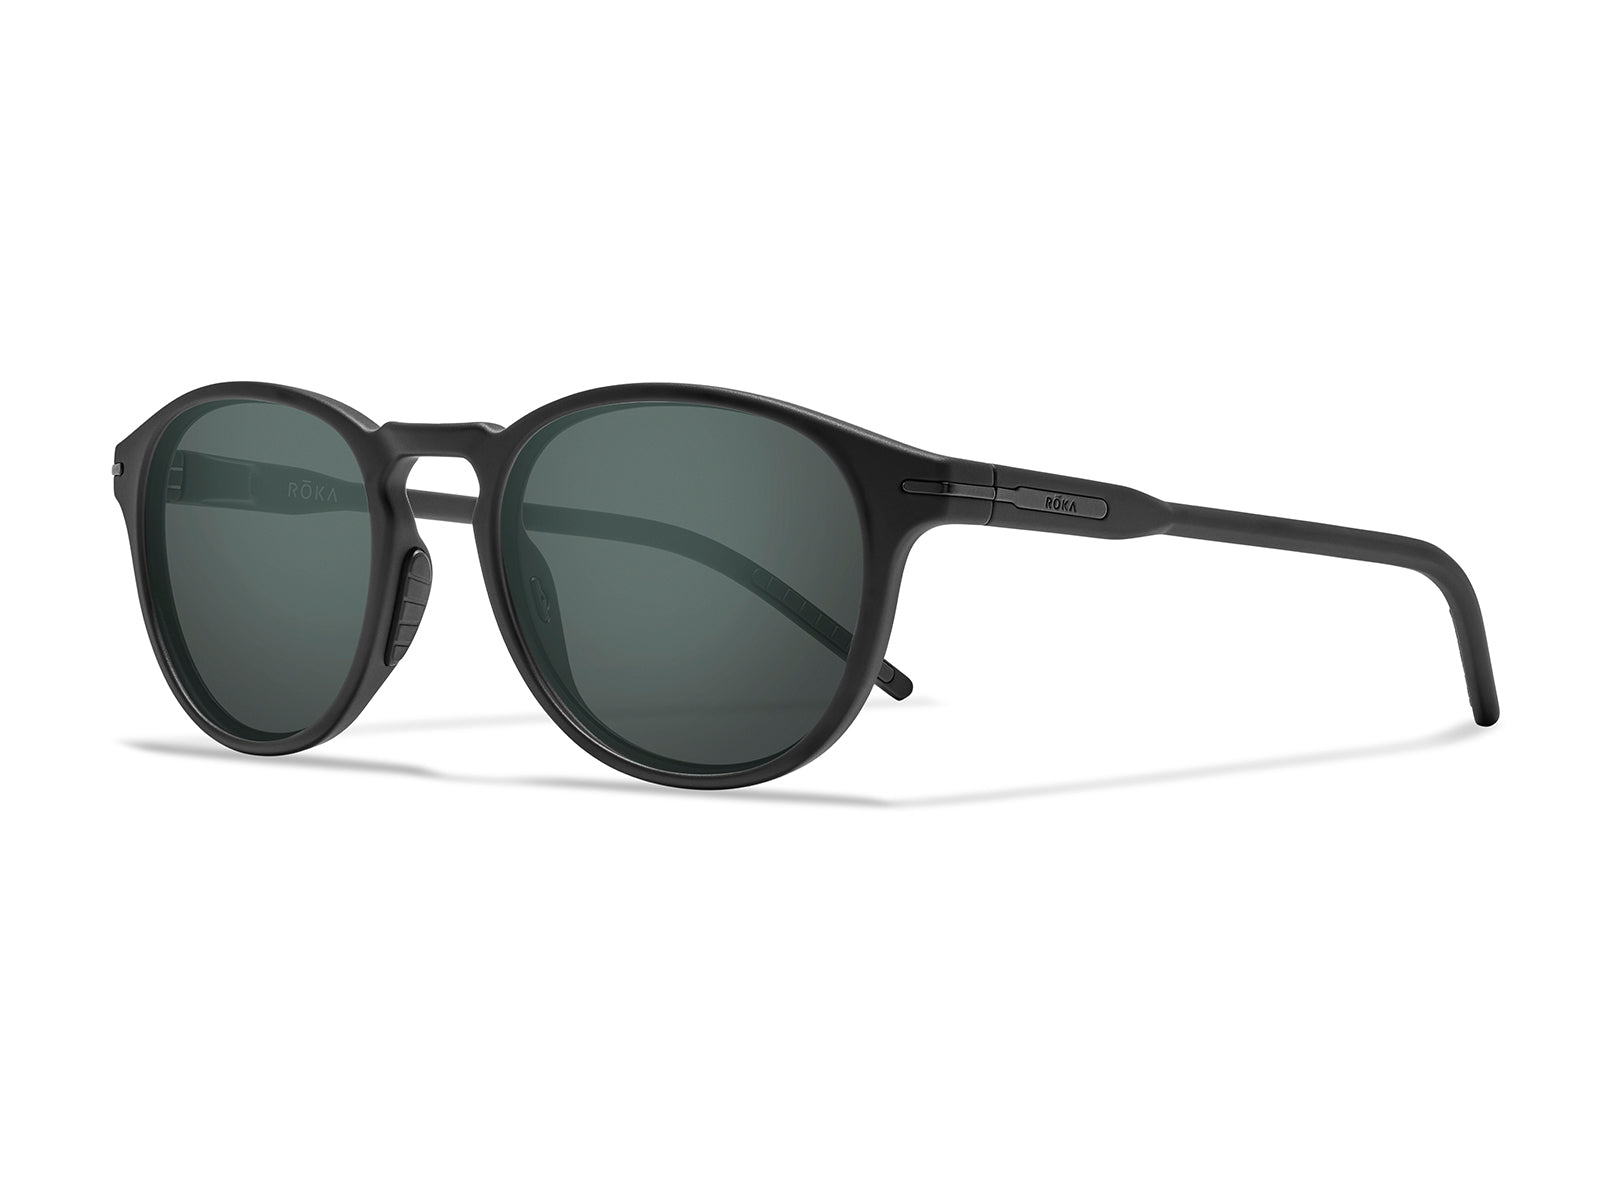 Roka Hunter 2.0 Sunglasses with Matte Black Tortoise Frames - Dark Carbon (Polarized) Lens